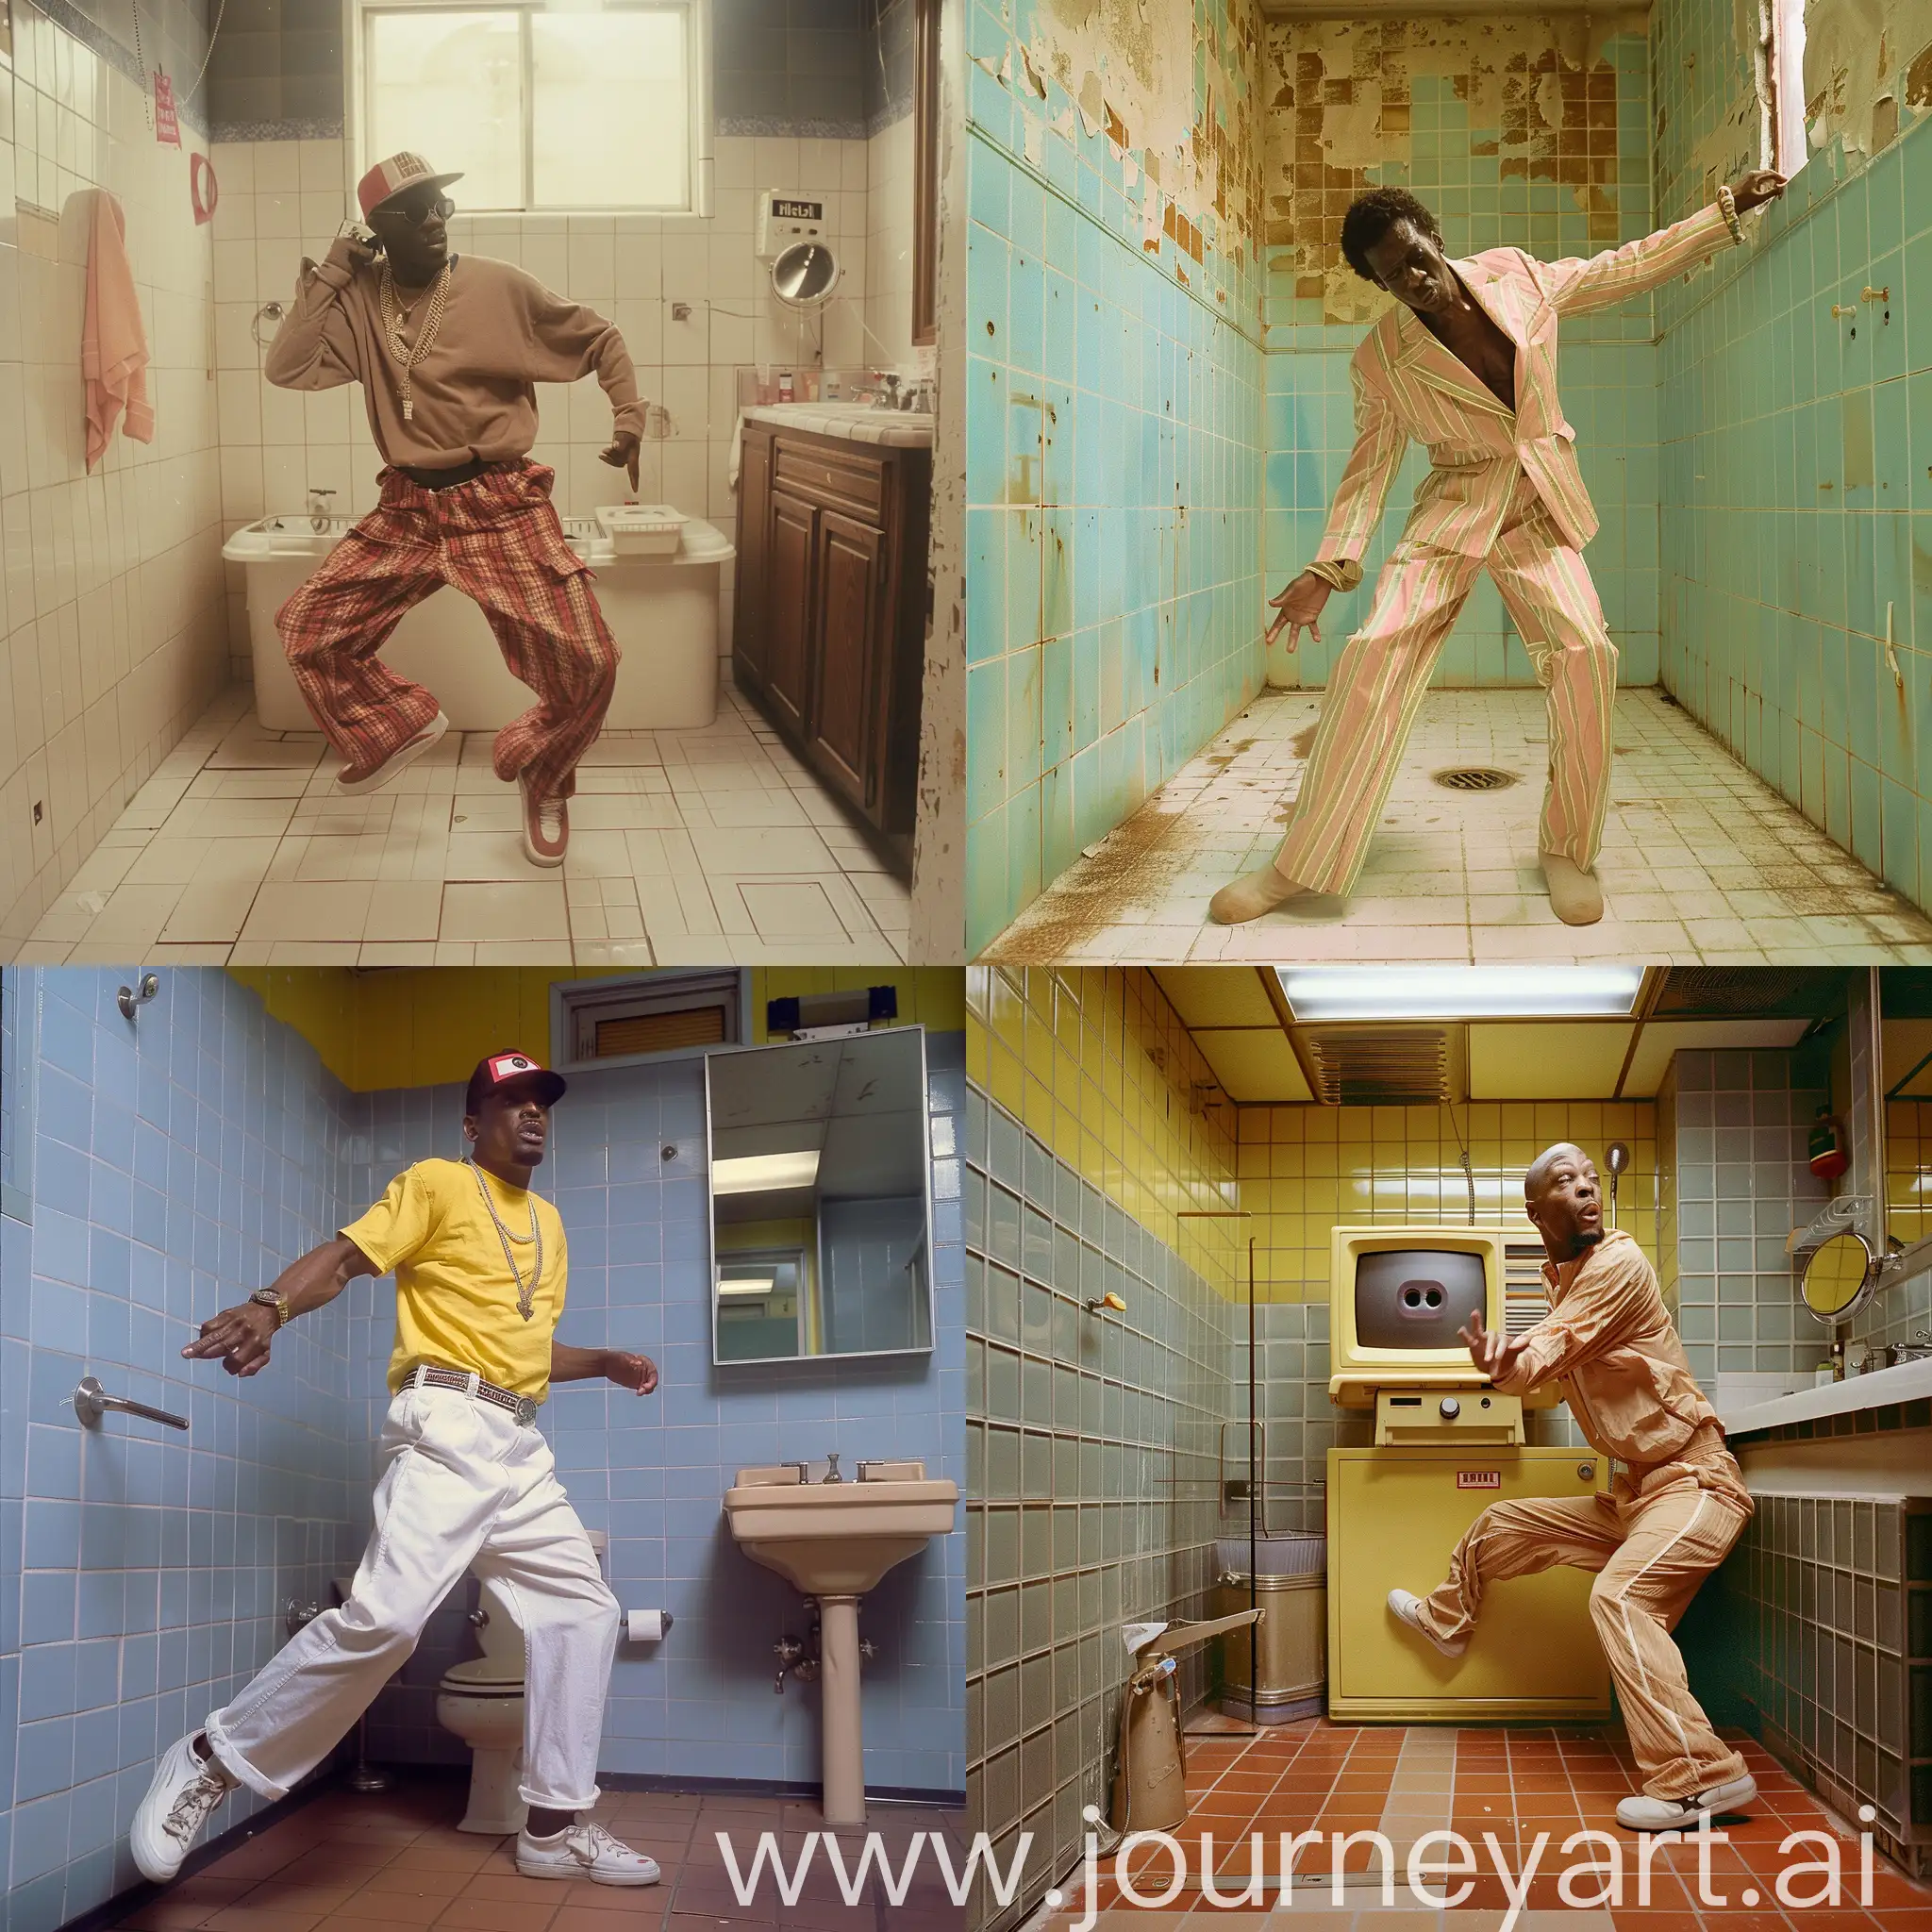 Ken-Carson-Rapper-Dance-in-1990s-Bathroom-VHS-Style